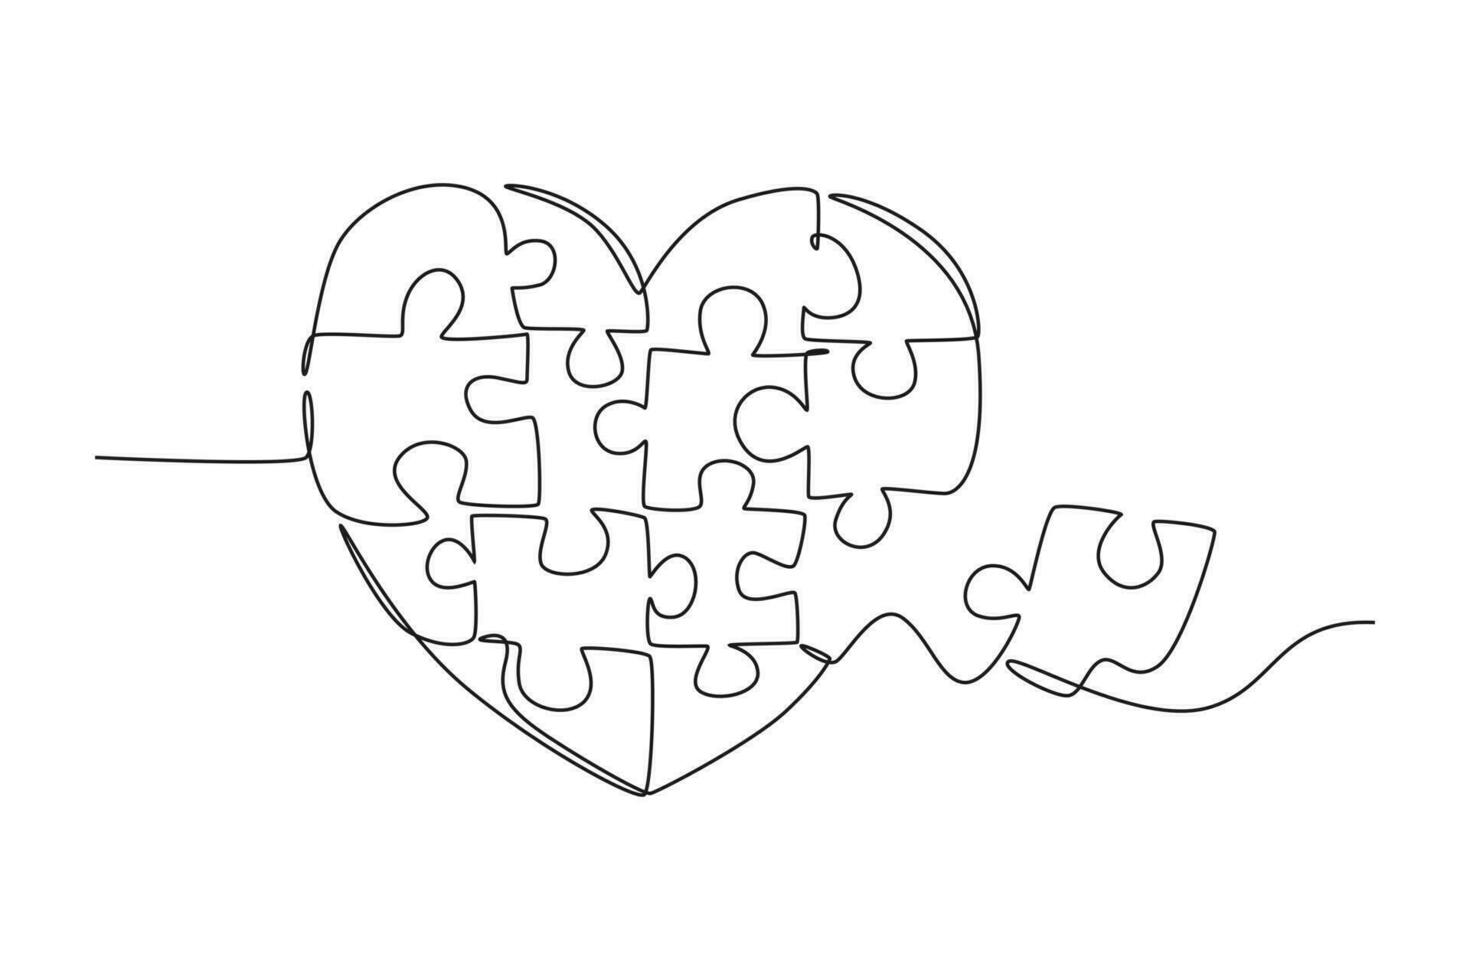 enda ett linje teckning uppsättning pussel bitar sätta den tillsammans till söt hjärta form form symbol. romantisk äktenskap kärlek relation begrepp. modern kontinuerlig linje dra design grafisk vektor illustration